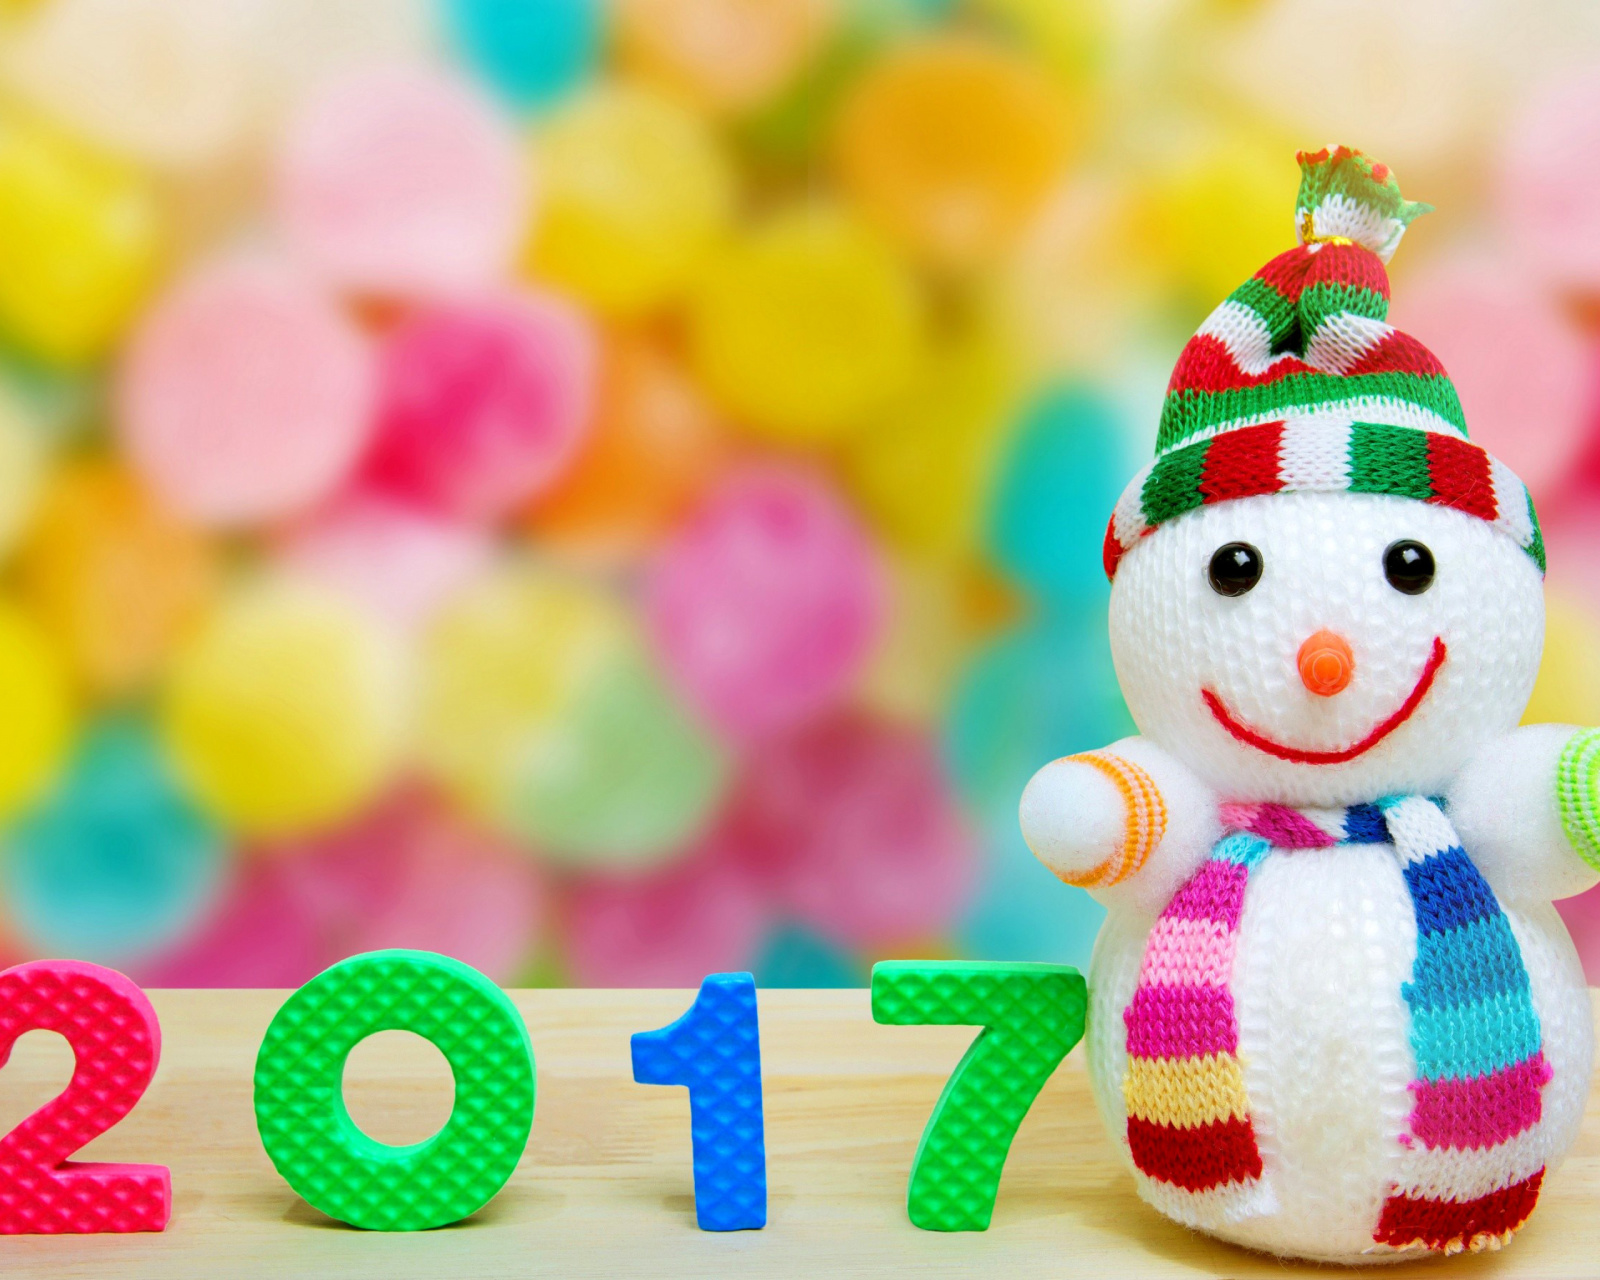 2017 New Year Snowman wallpaper 1600x1280